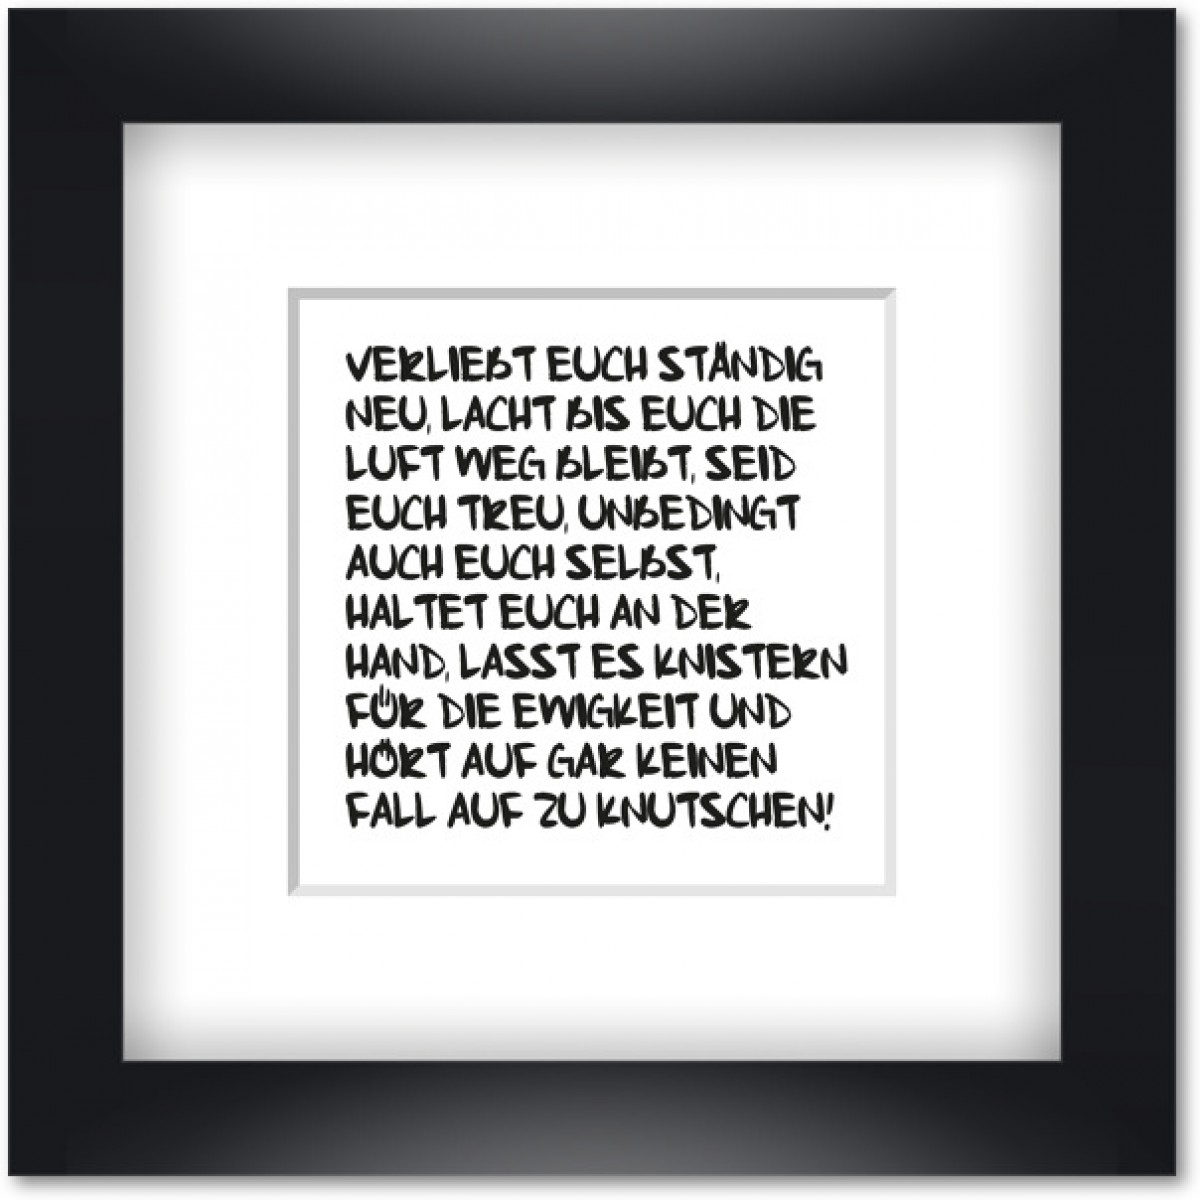 Love is the new black - Motiv "Verliebt Euch ständig neu" gerahmt 19x19 cm